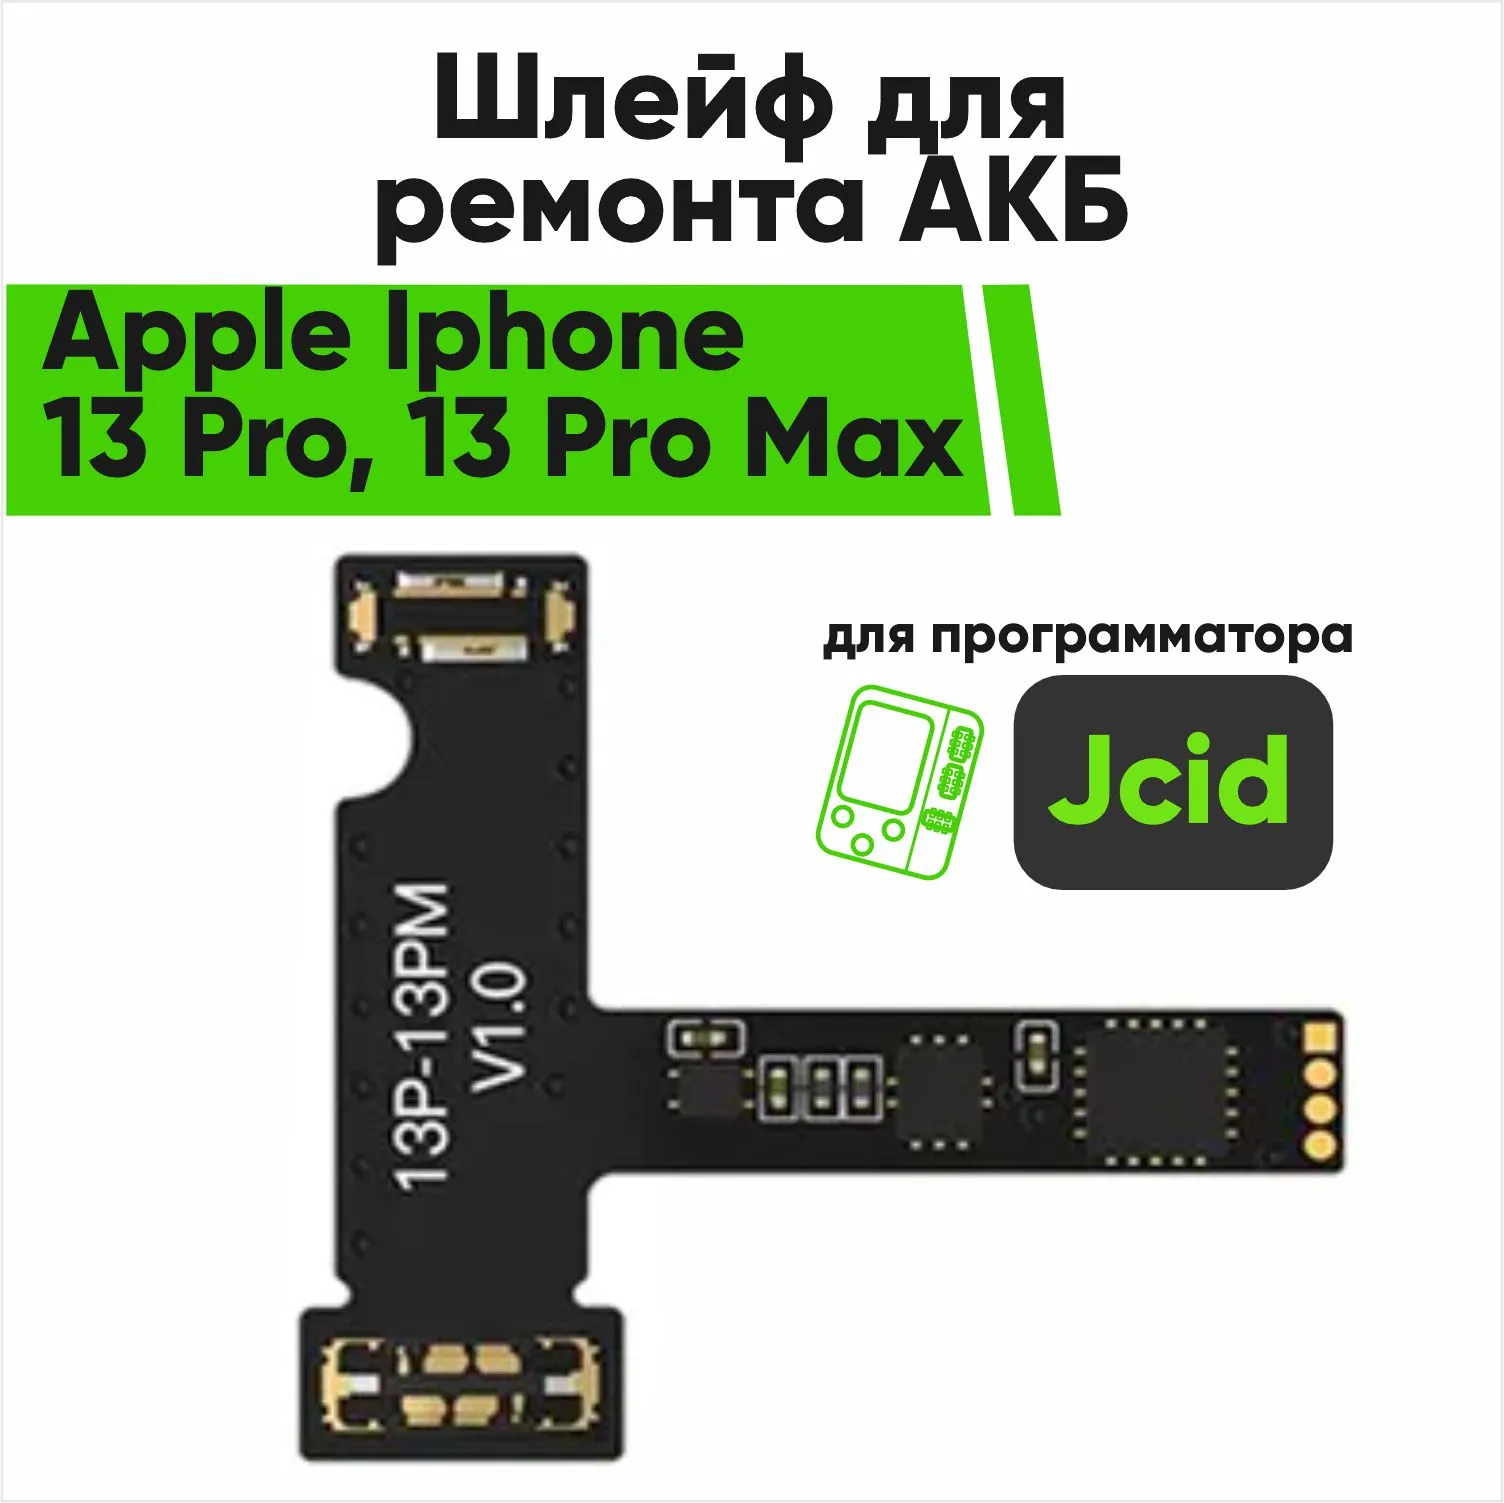 Шлейф для ремонта акб Jcid Apple Iphone 13 Pro, 13 Pro Max